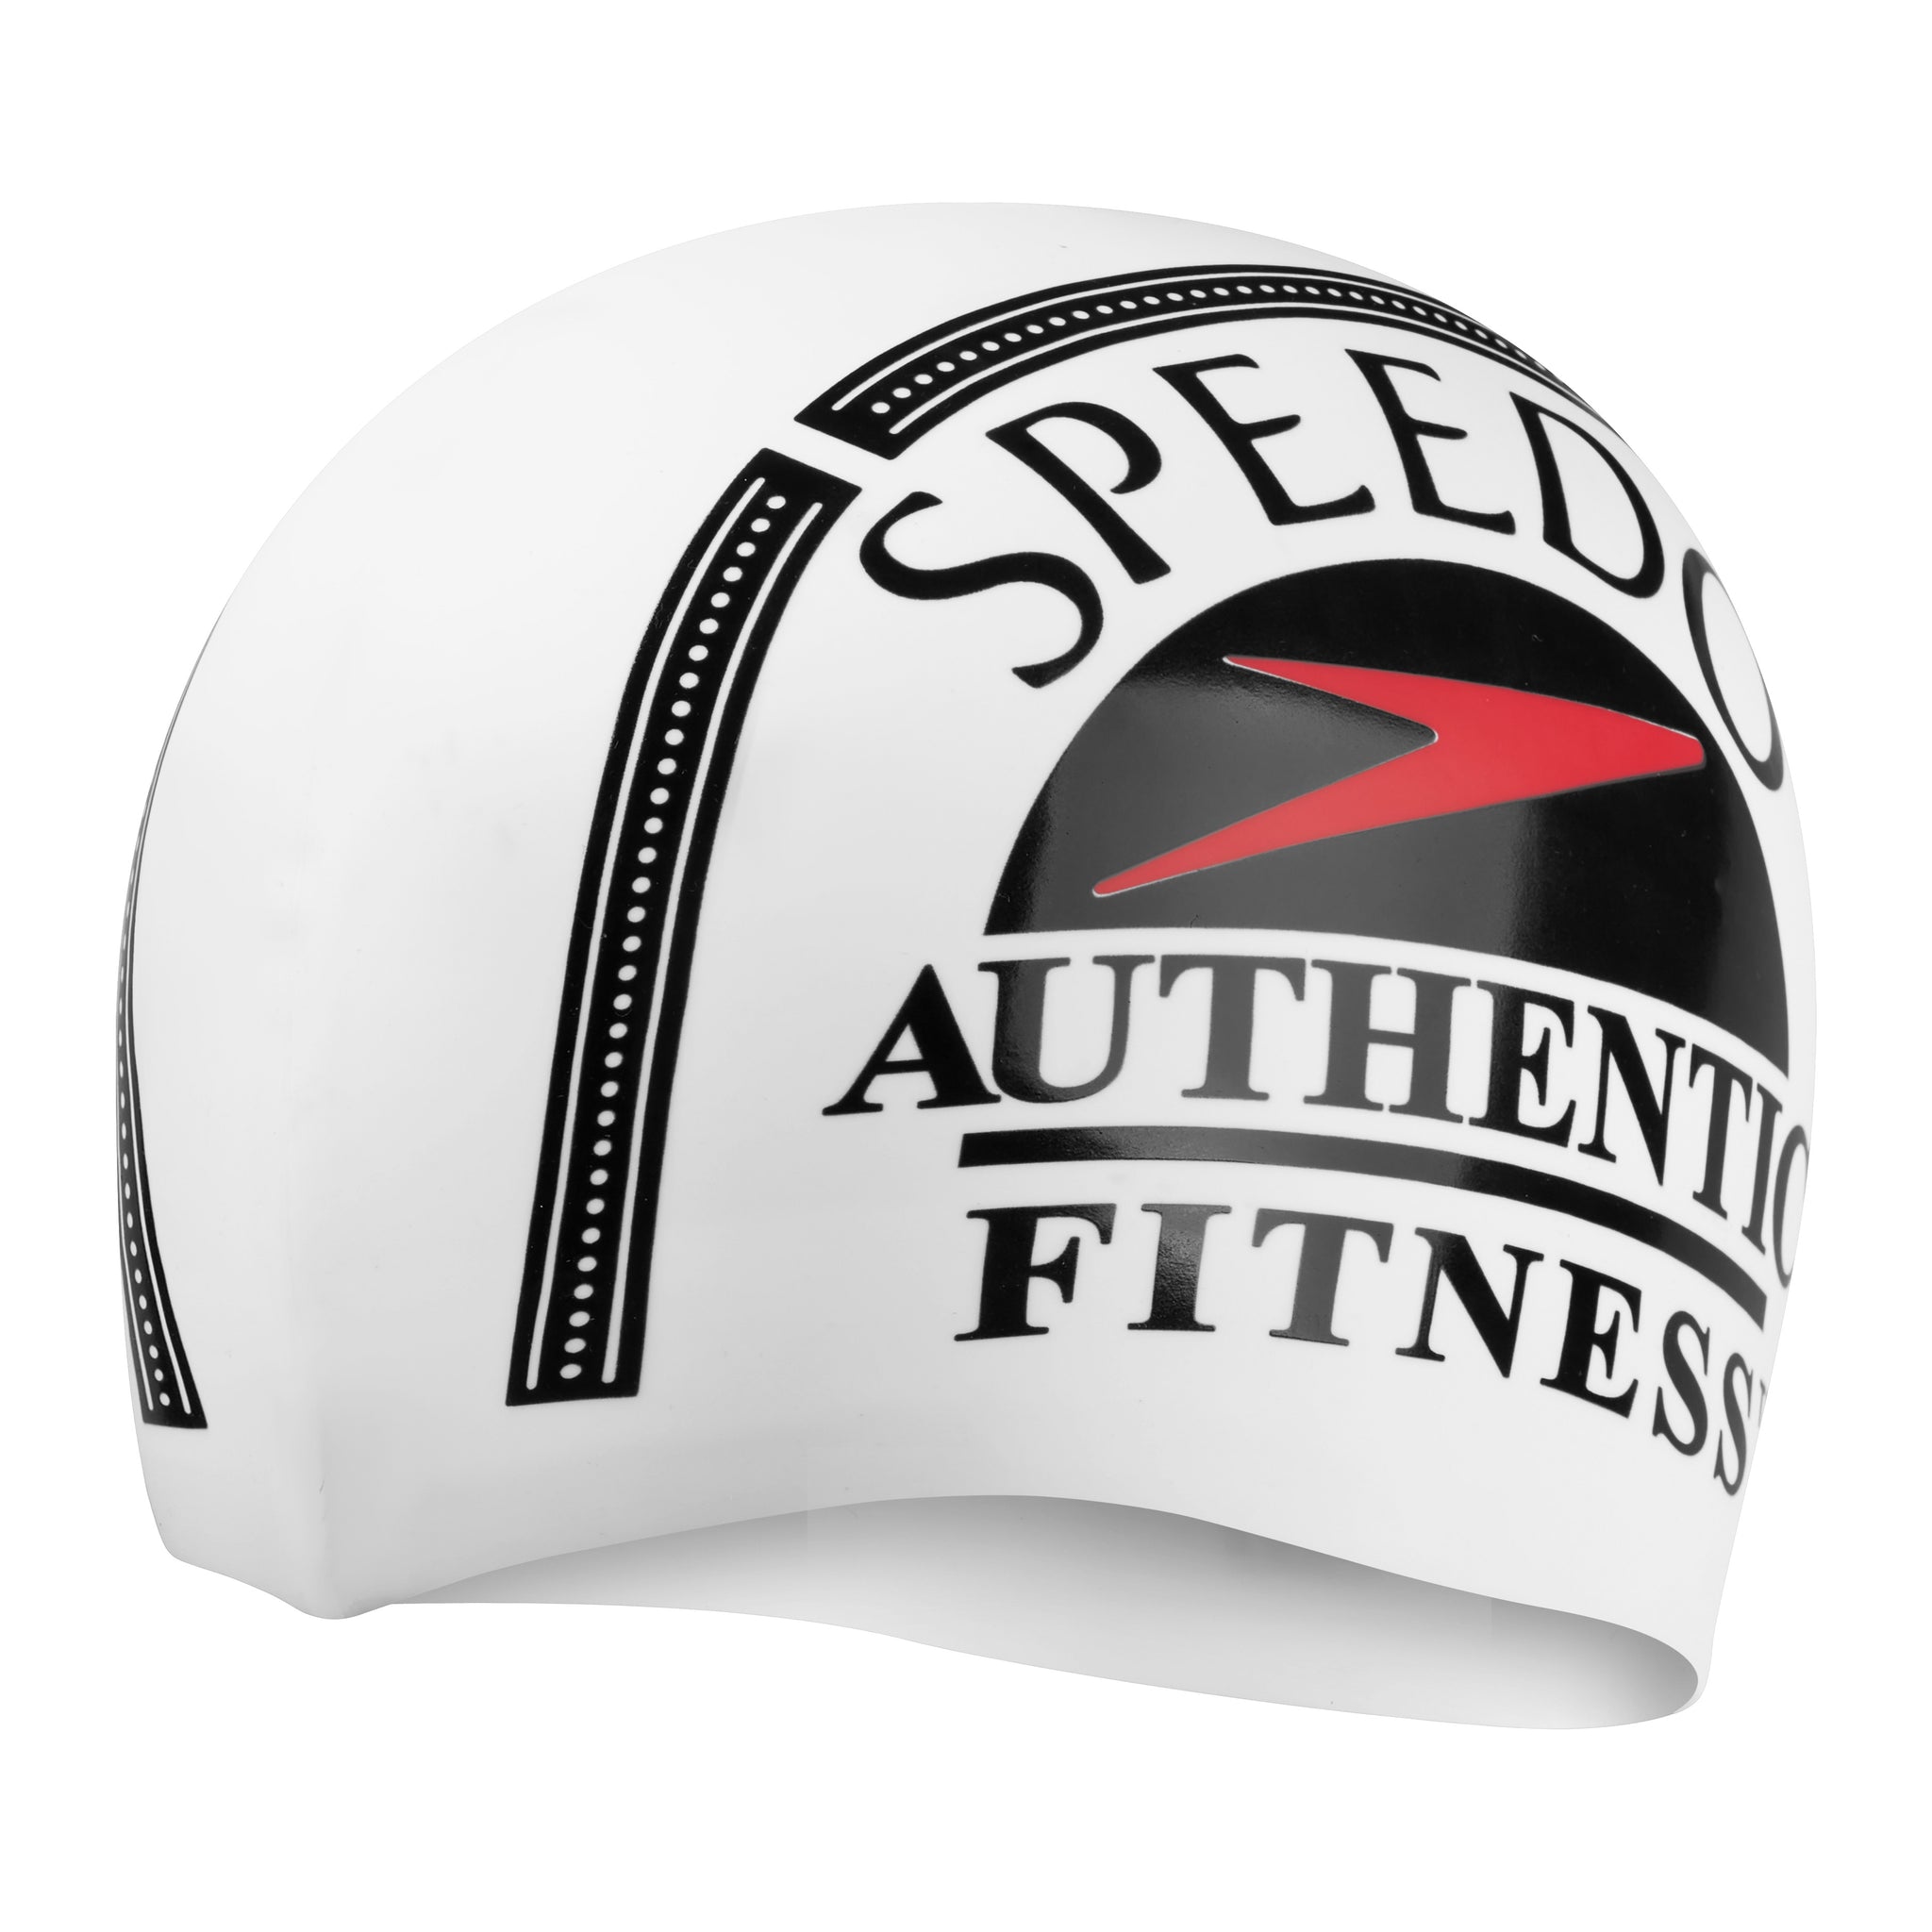 Authentic Fitness Slogan Printed Swimcap – Speedo Philippines